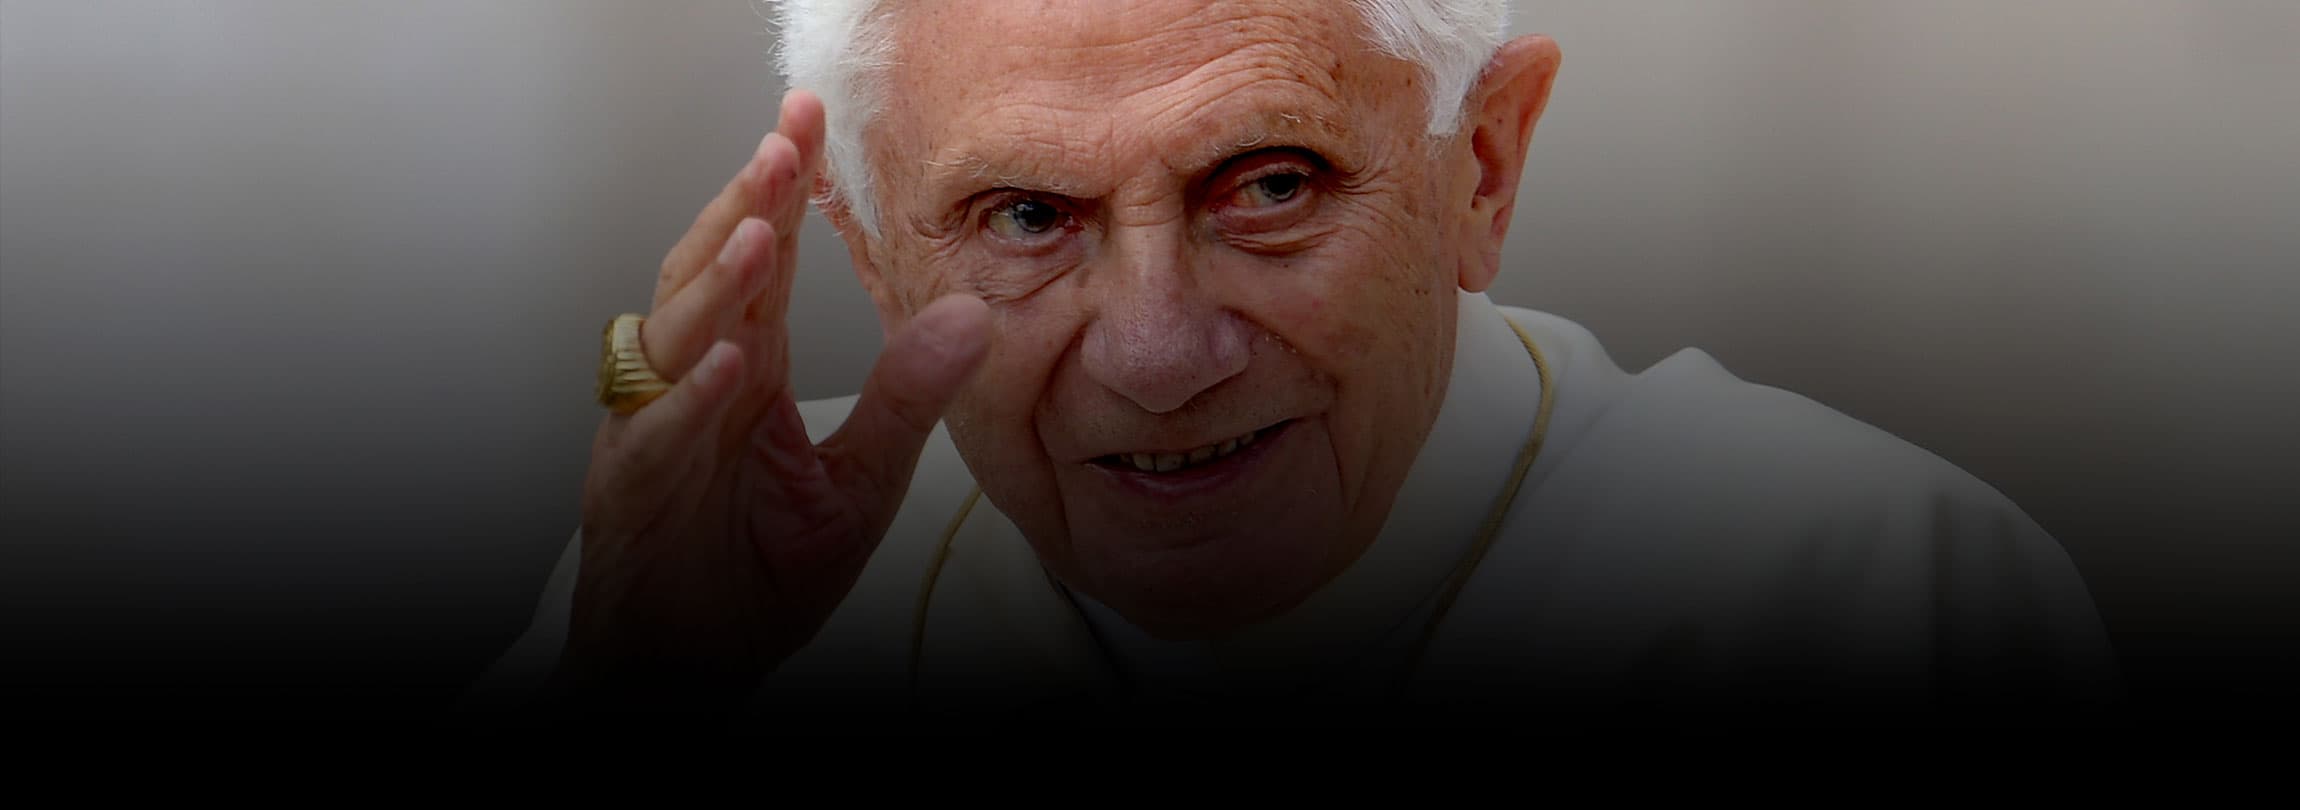 Cristãos devem percorrer juntos o "caminho estreito" da fidelidade a Deus, afirma o Papa